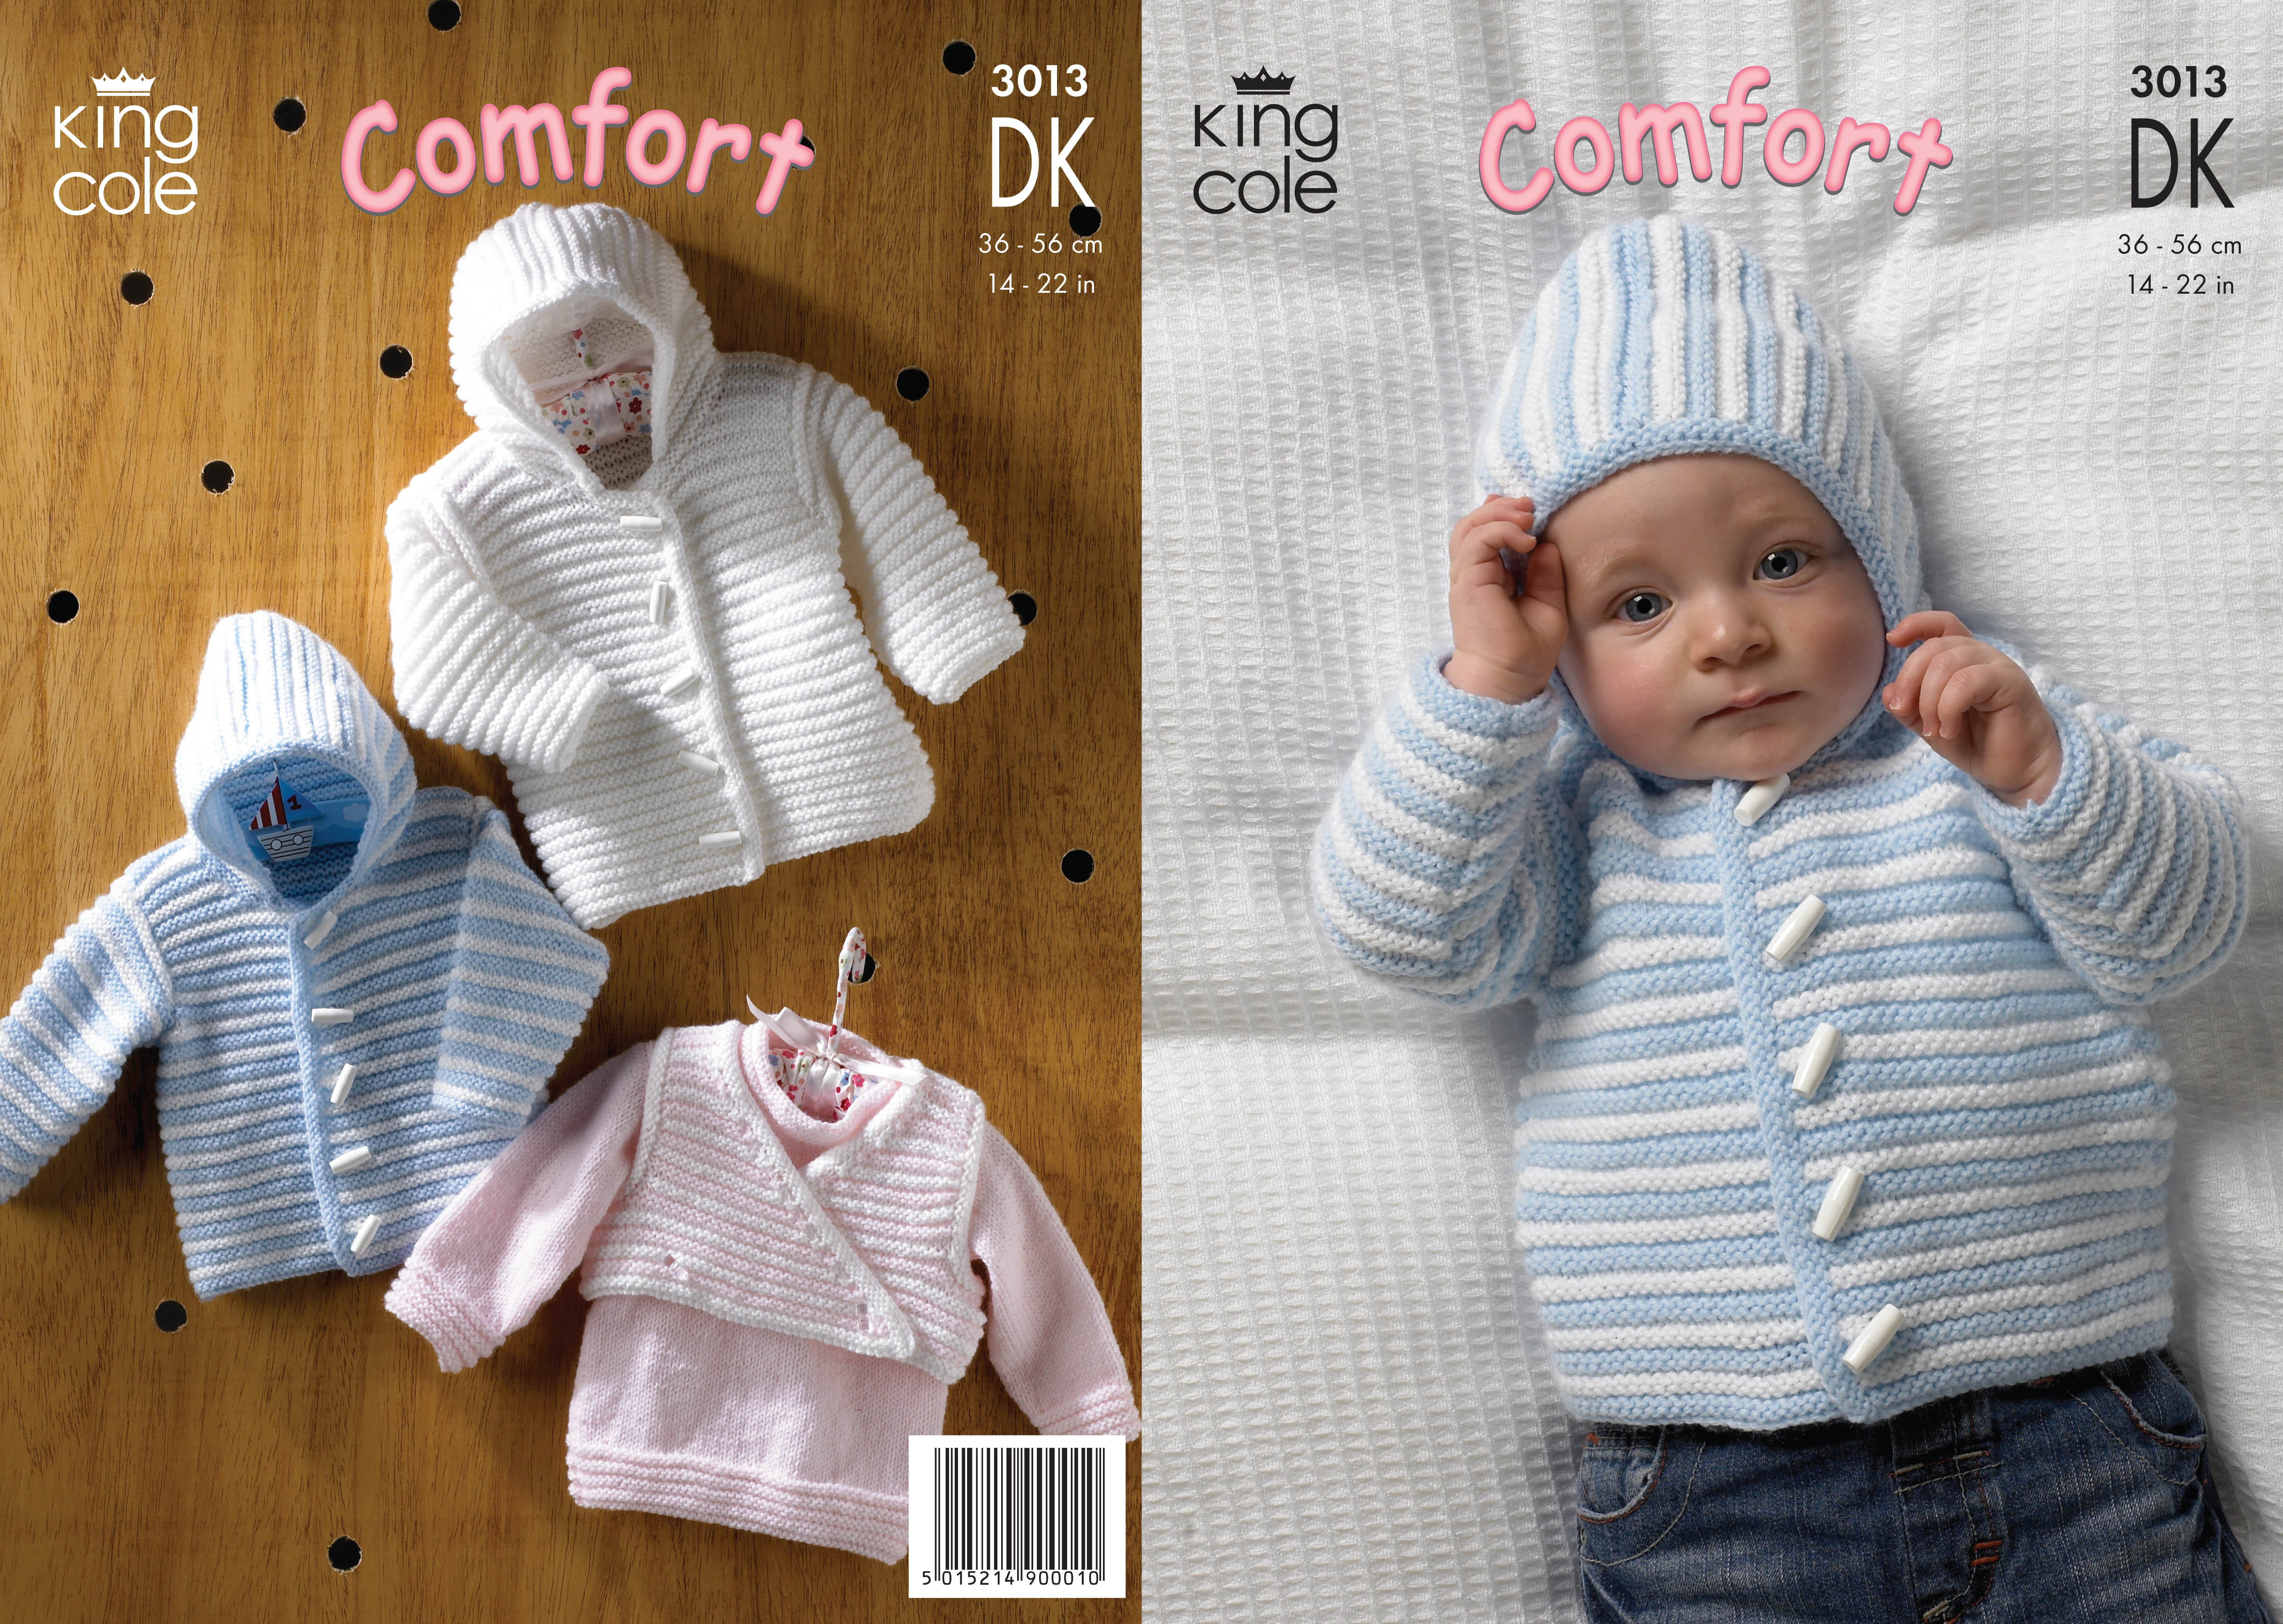 Newborn Knit Patterns Details About Ba Double Knitting Dk Pattern King Cole Striped Jacket Sweater Bodywarmer 3013